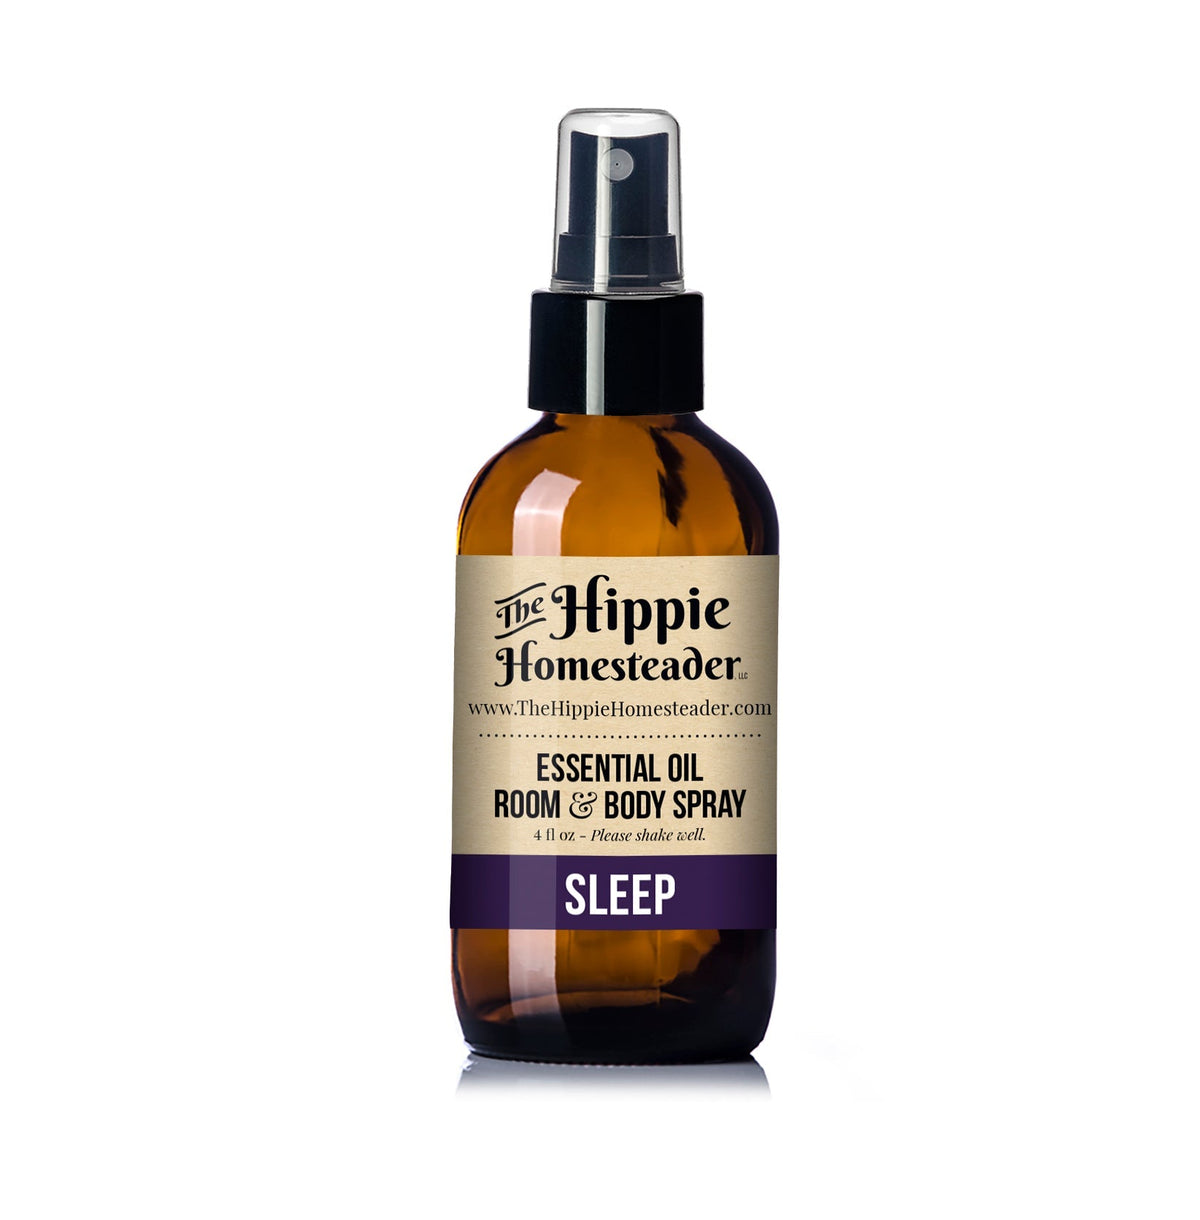 SLEEP Room & Body Spray by The Hippie Homesteader, LLC